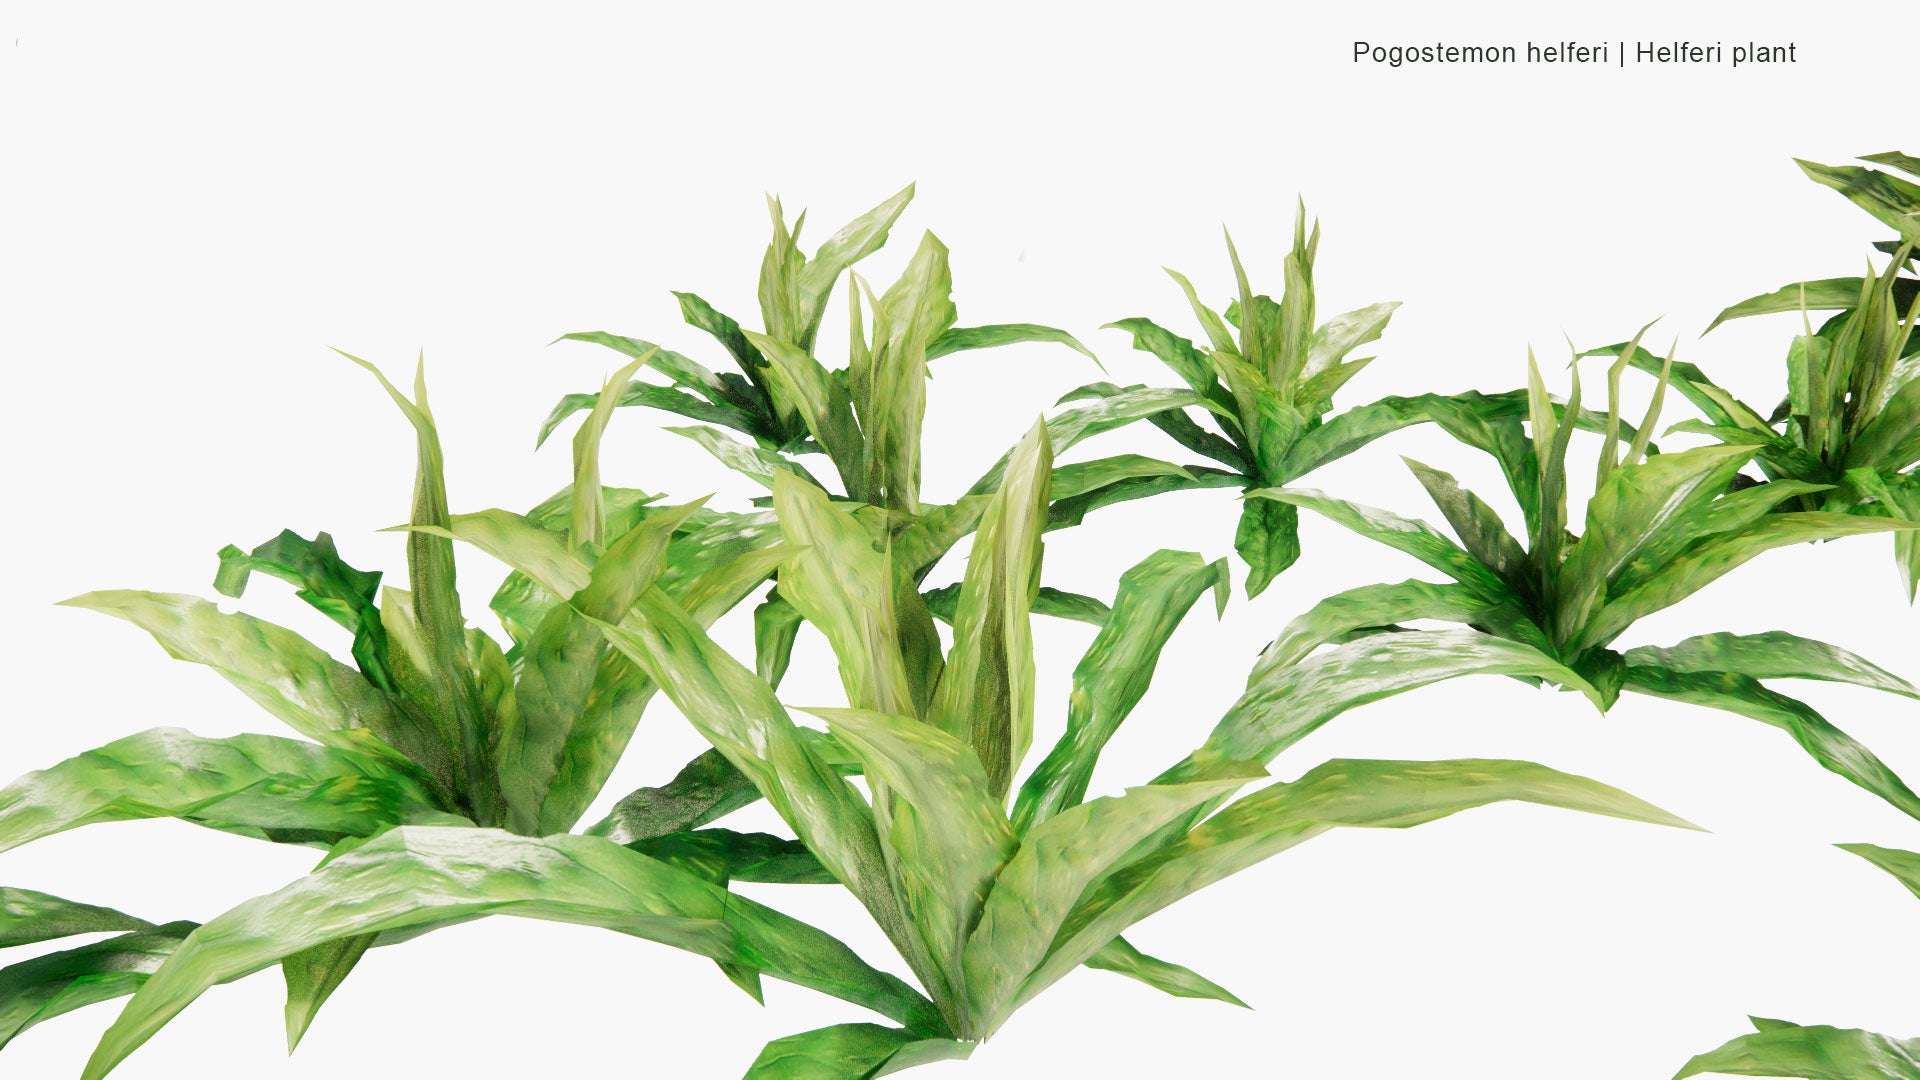 Low Poly Pogostemon Helferi - Helferi Plant (3D Model)